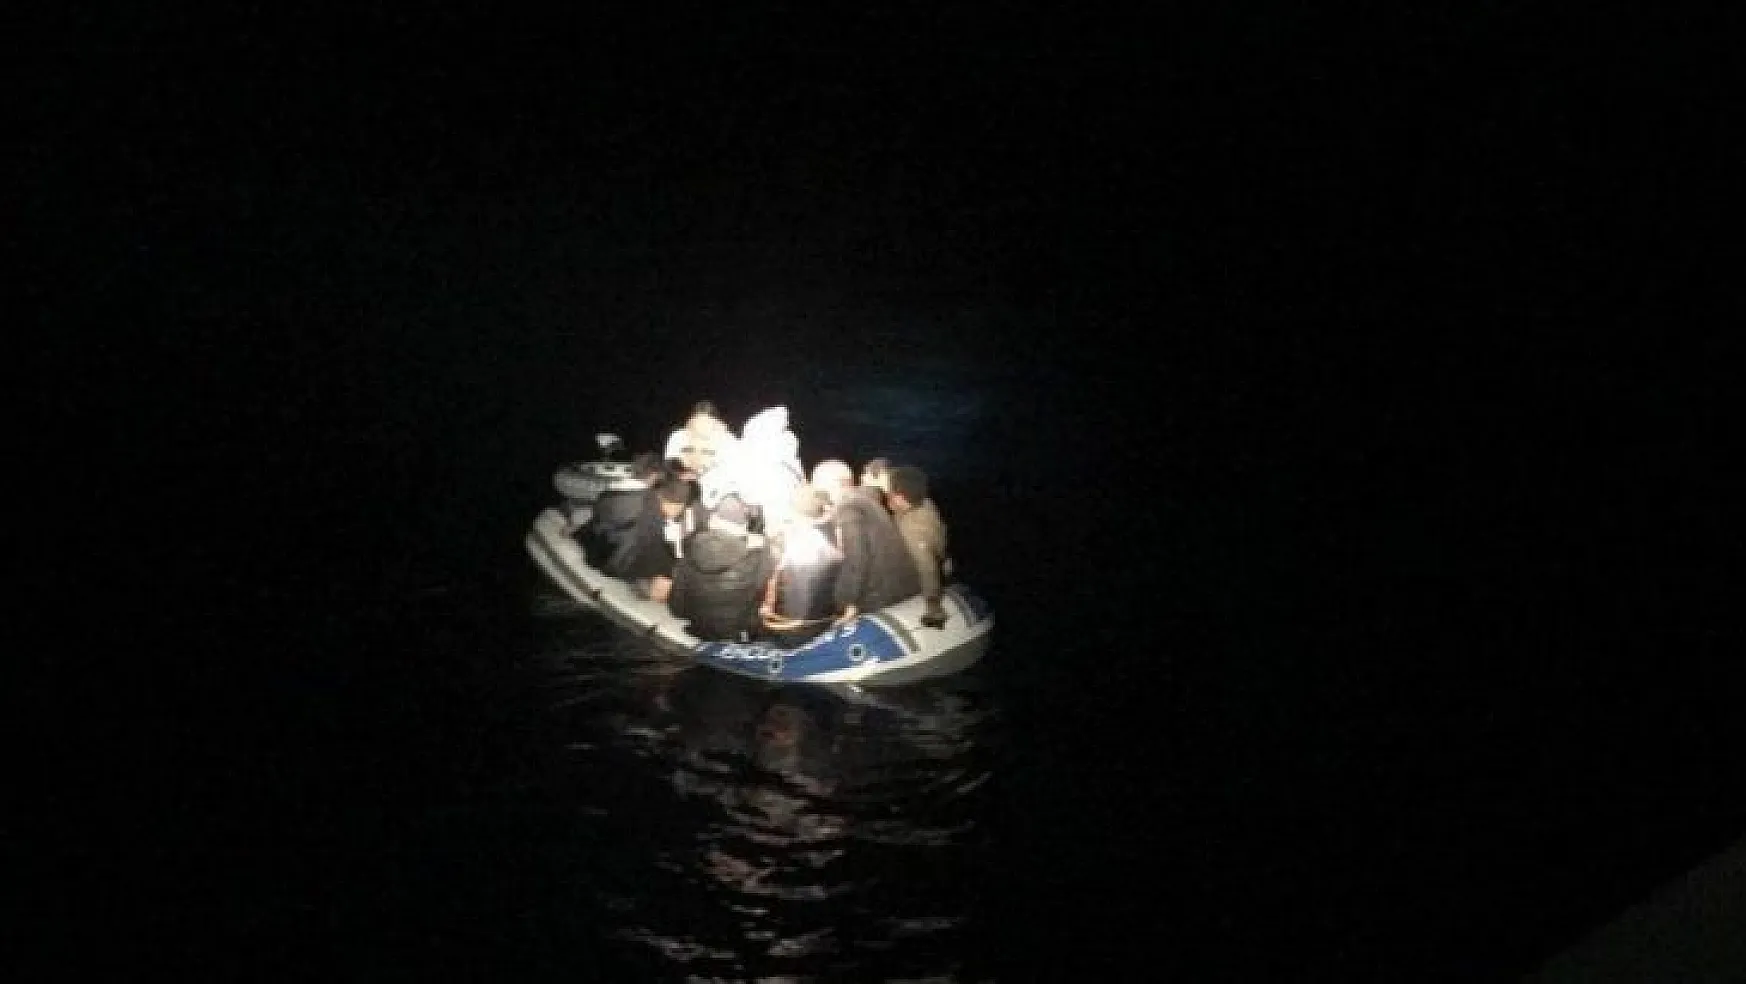 51 mülteci Sahil Güvenlik ekipleri tarafında kaçarken yakalandı